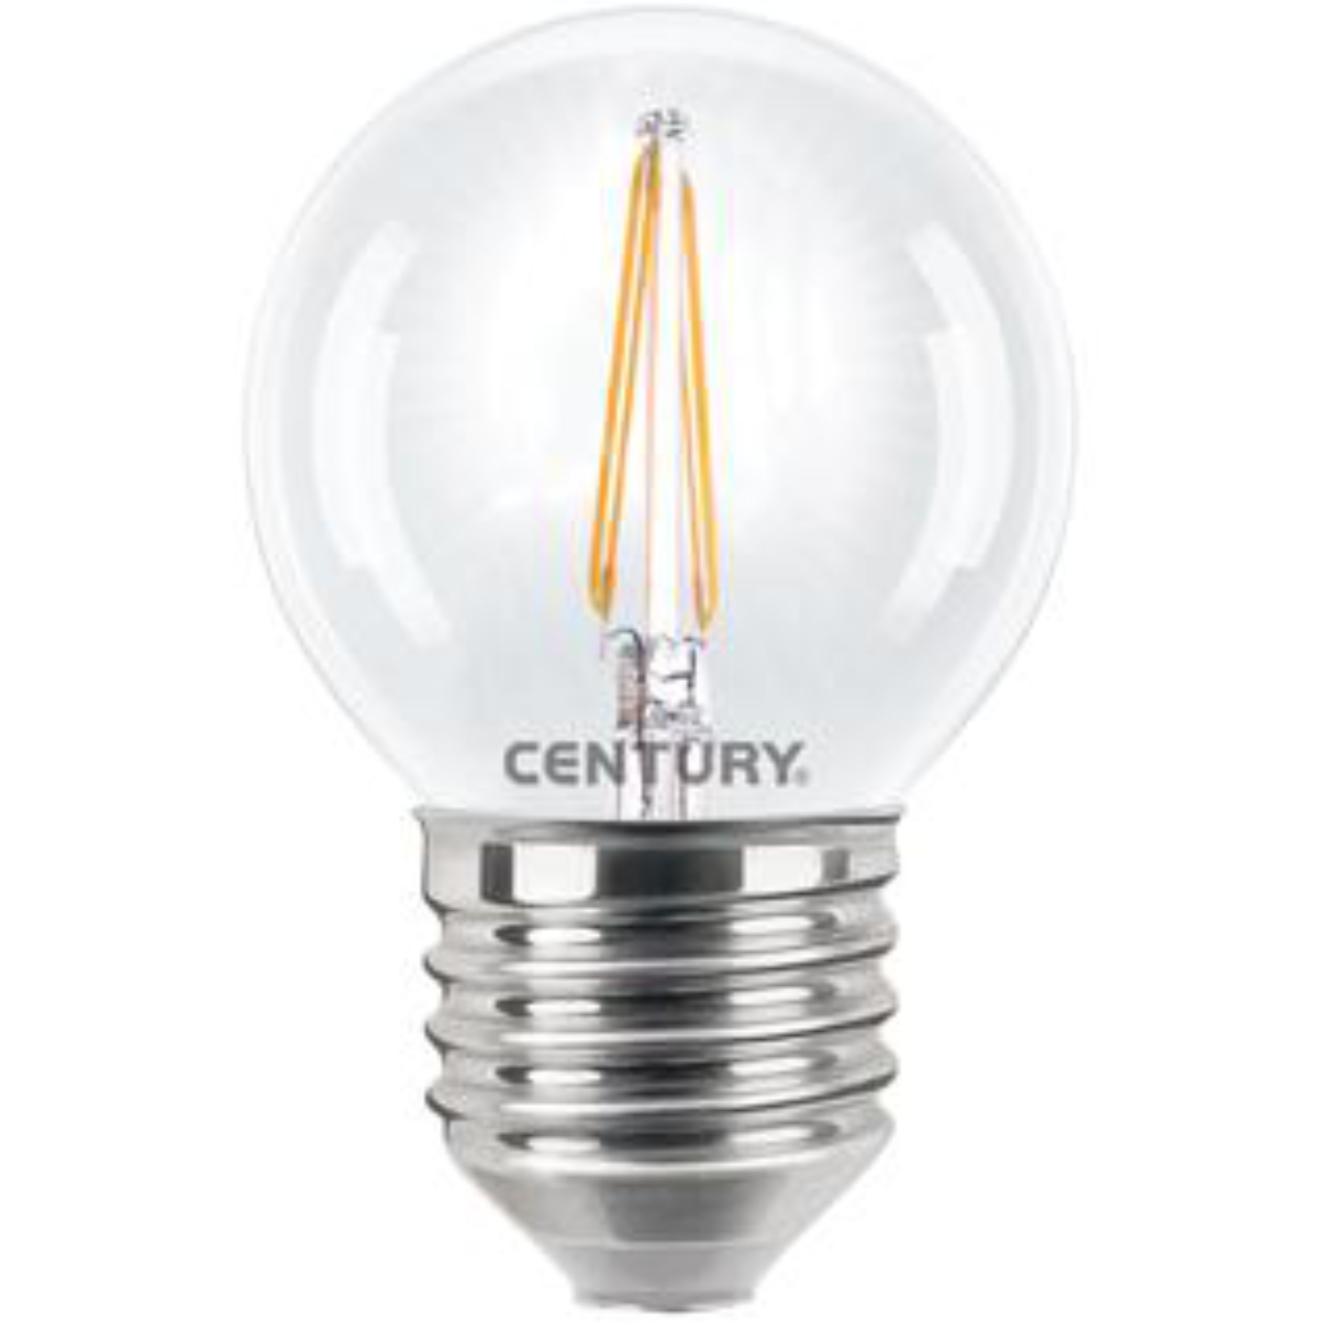 Filament LED Lamp - E27 - 4 Watt - Century